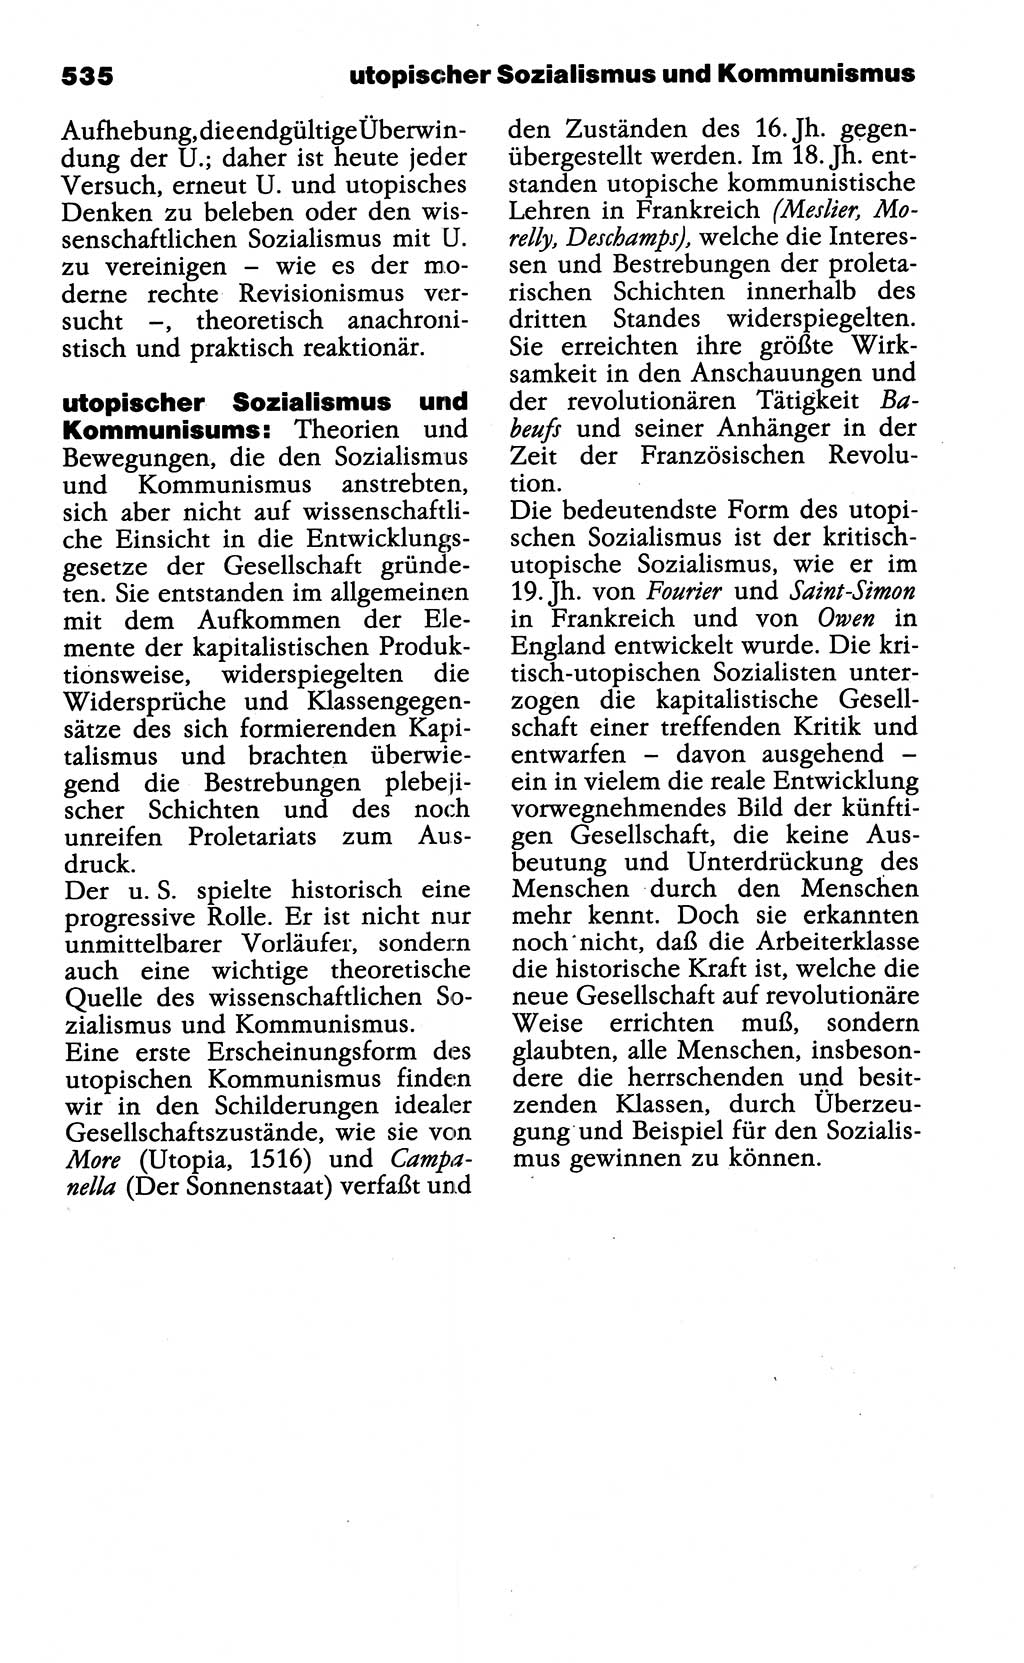 Wörterbuch der marxistisch-leninistischen Philosophie [Deutsche Demokratische Republik (DDR)] 1985, Seite 535 (Wb. ML Phil. DDR 1985, S. 535)